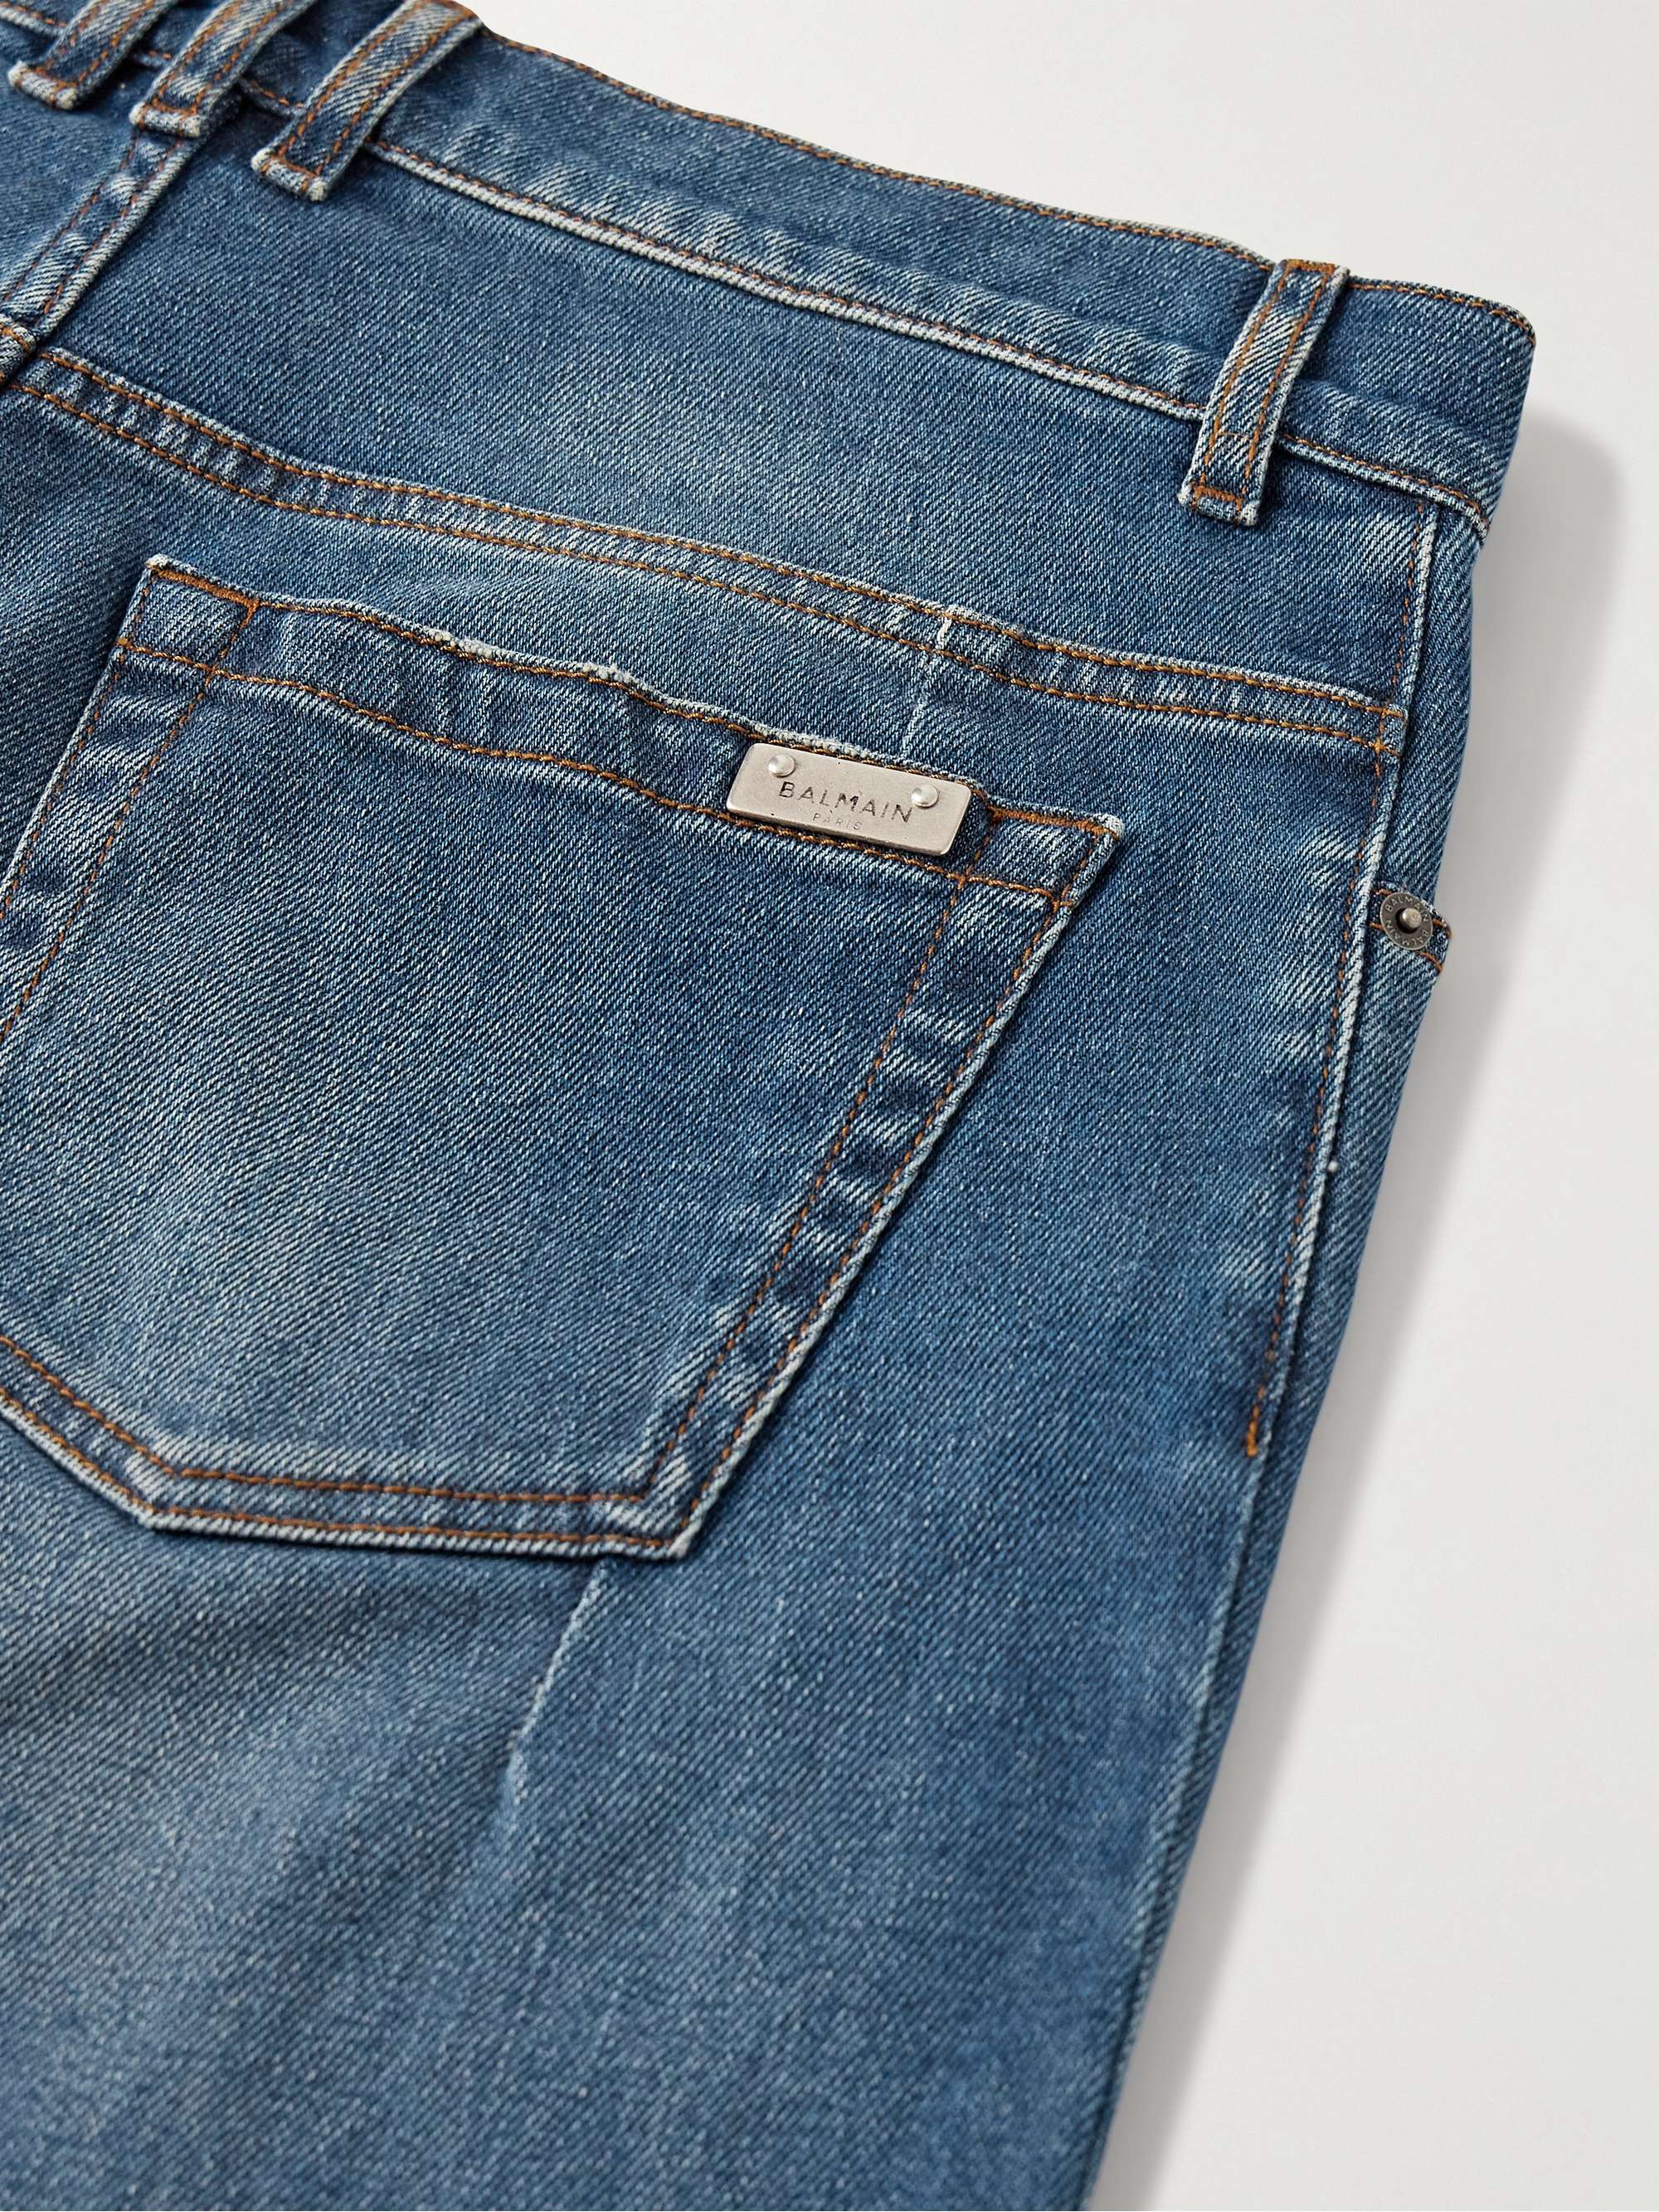 BALMAIN Slim-Fit Jeans for Men | MR PORTER